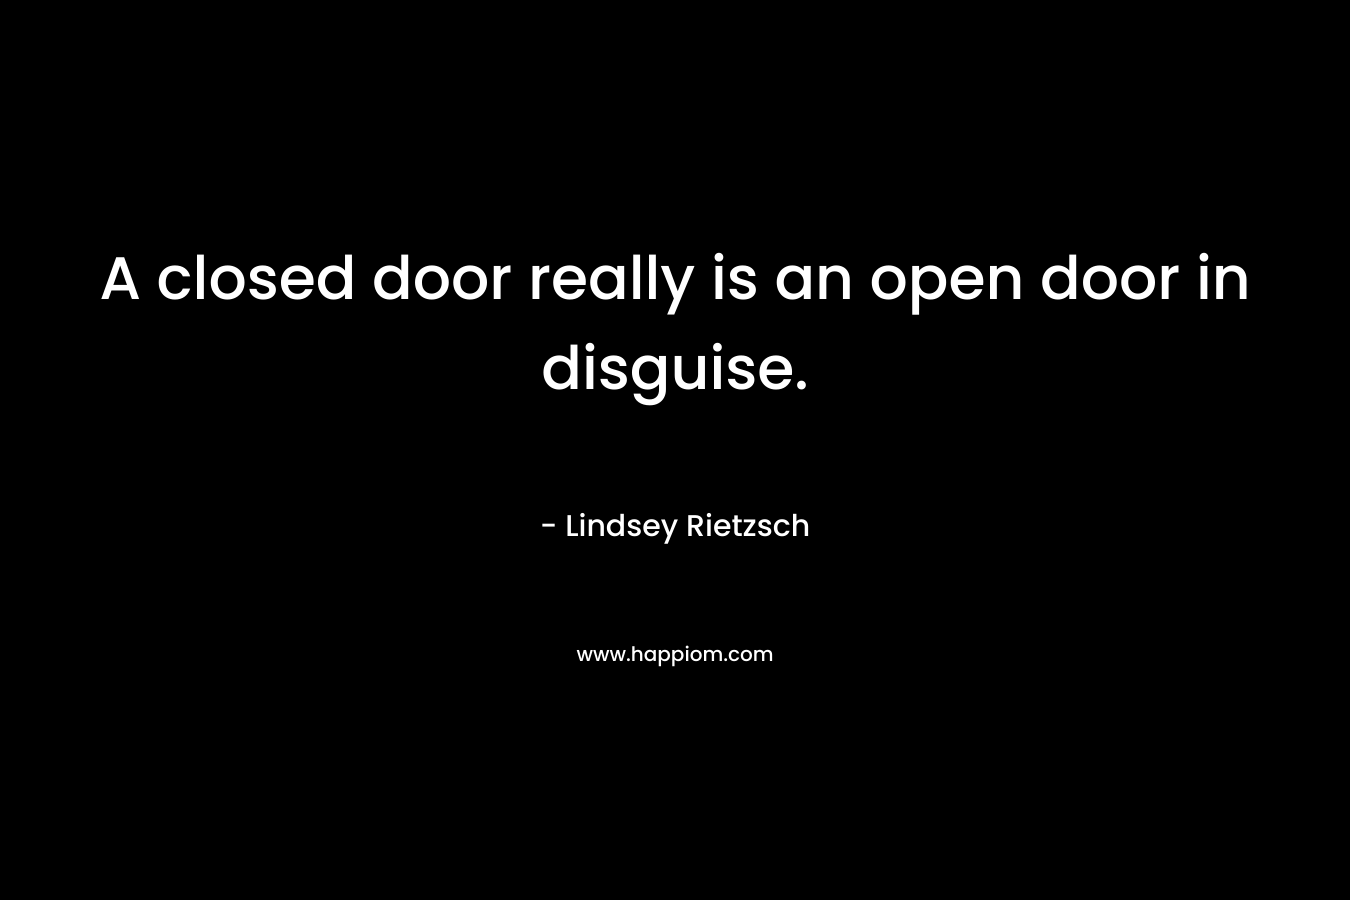 A closed door really is an open door in disguise.